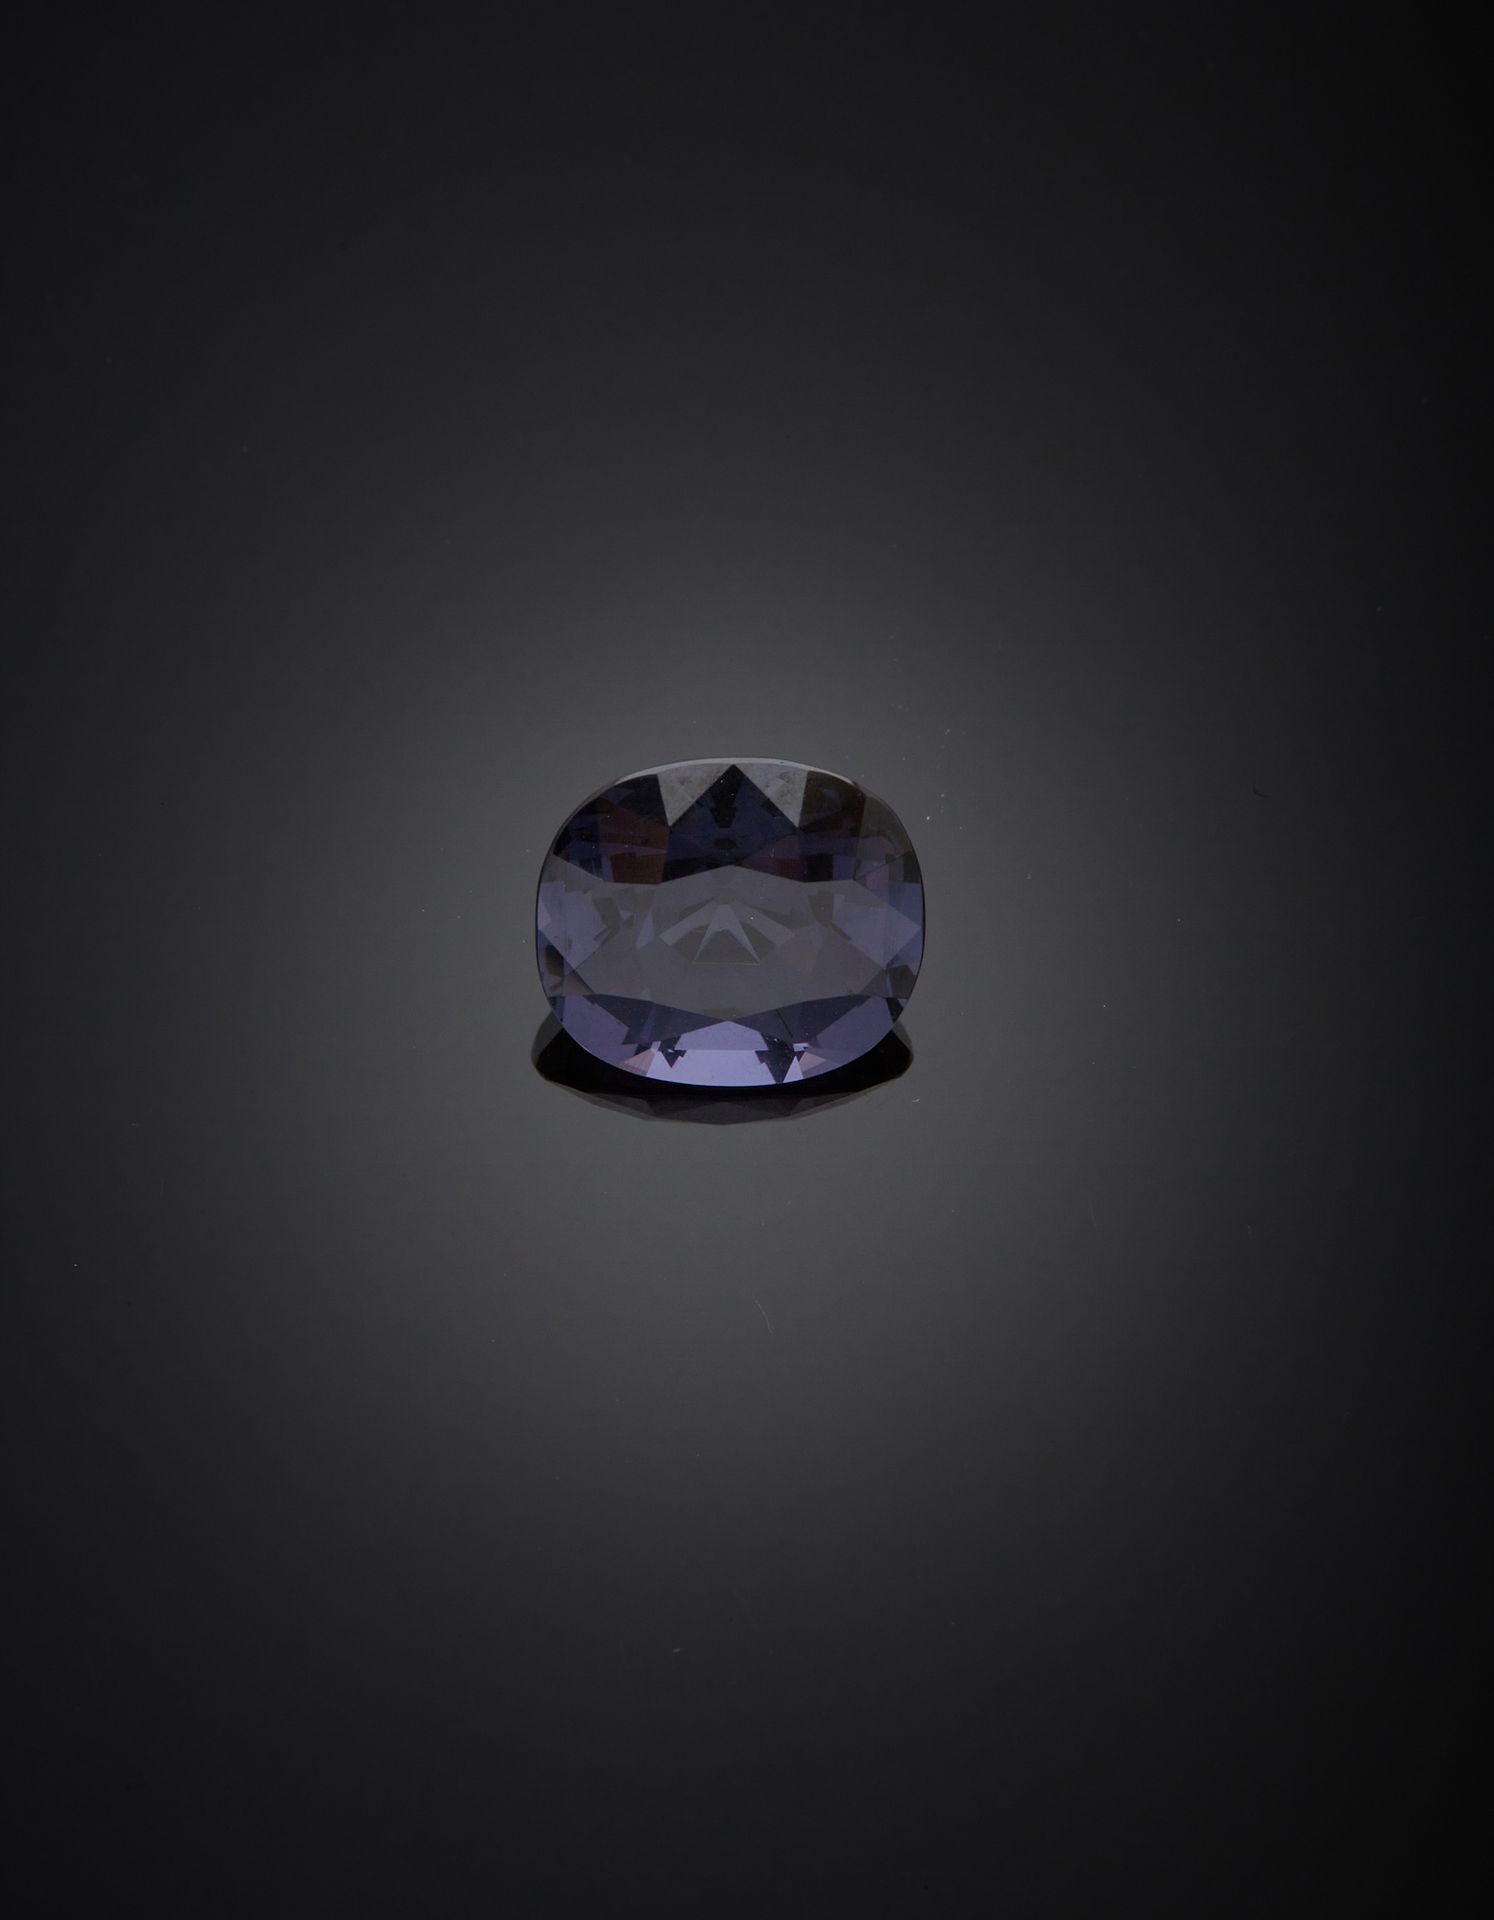 Null 枕形，刻面的蓝紫色尖晶石。

2006年7月20日法国宝石学实验室第174906号证书

物体：刻面的紫蓝色宝石 - 商品名称：Spinelle - &hellip;